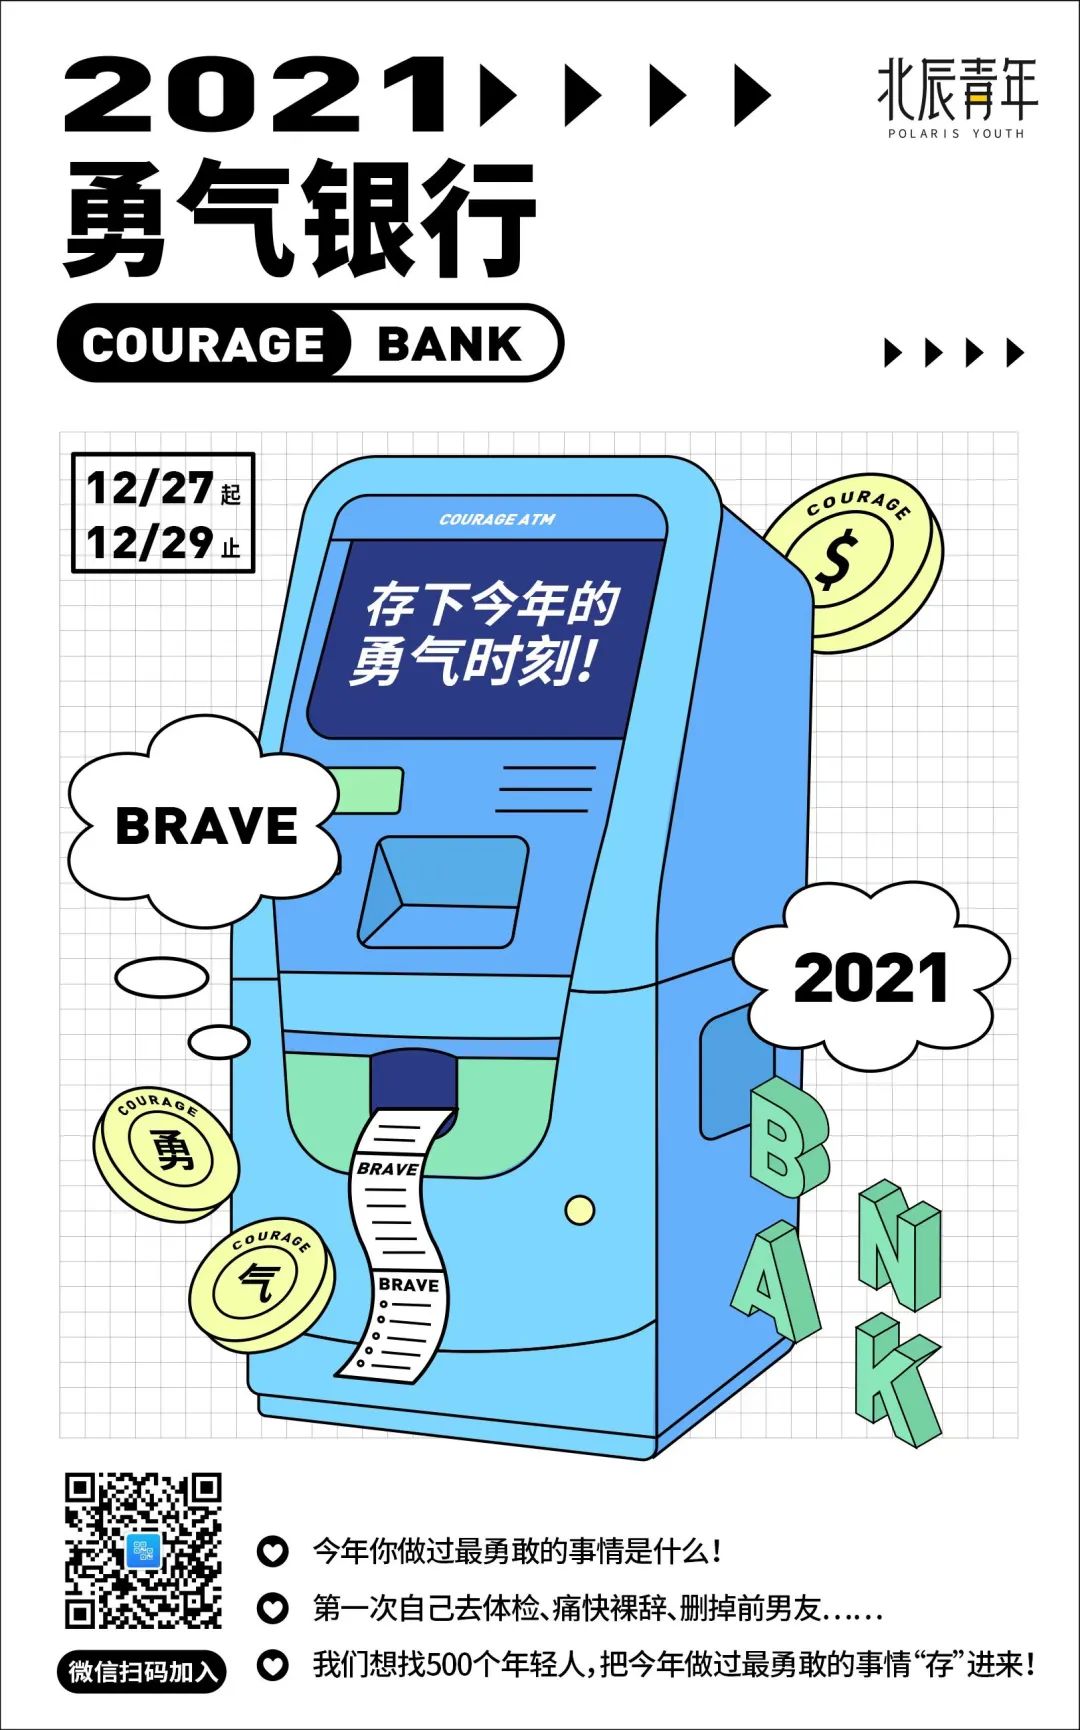 2021北辰青年银行